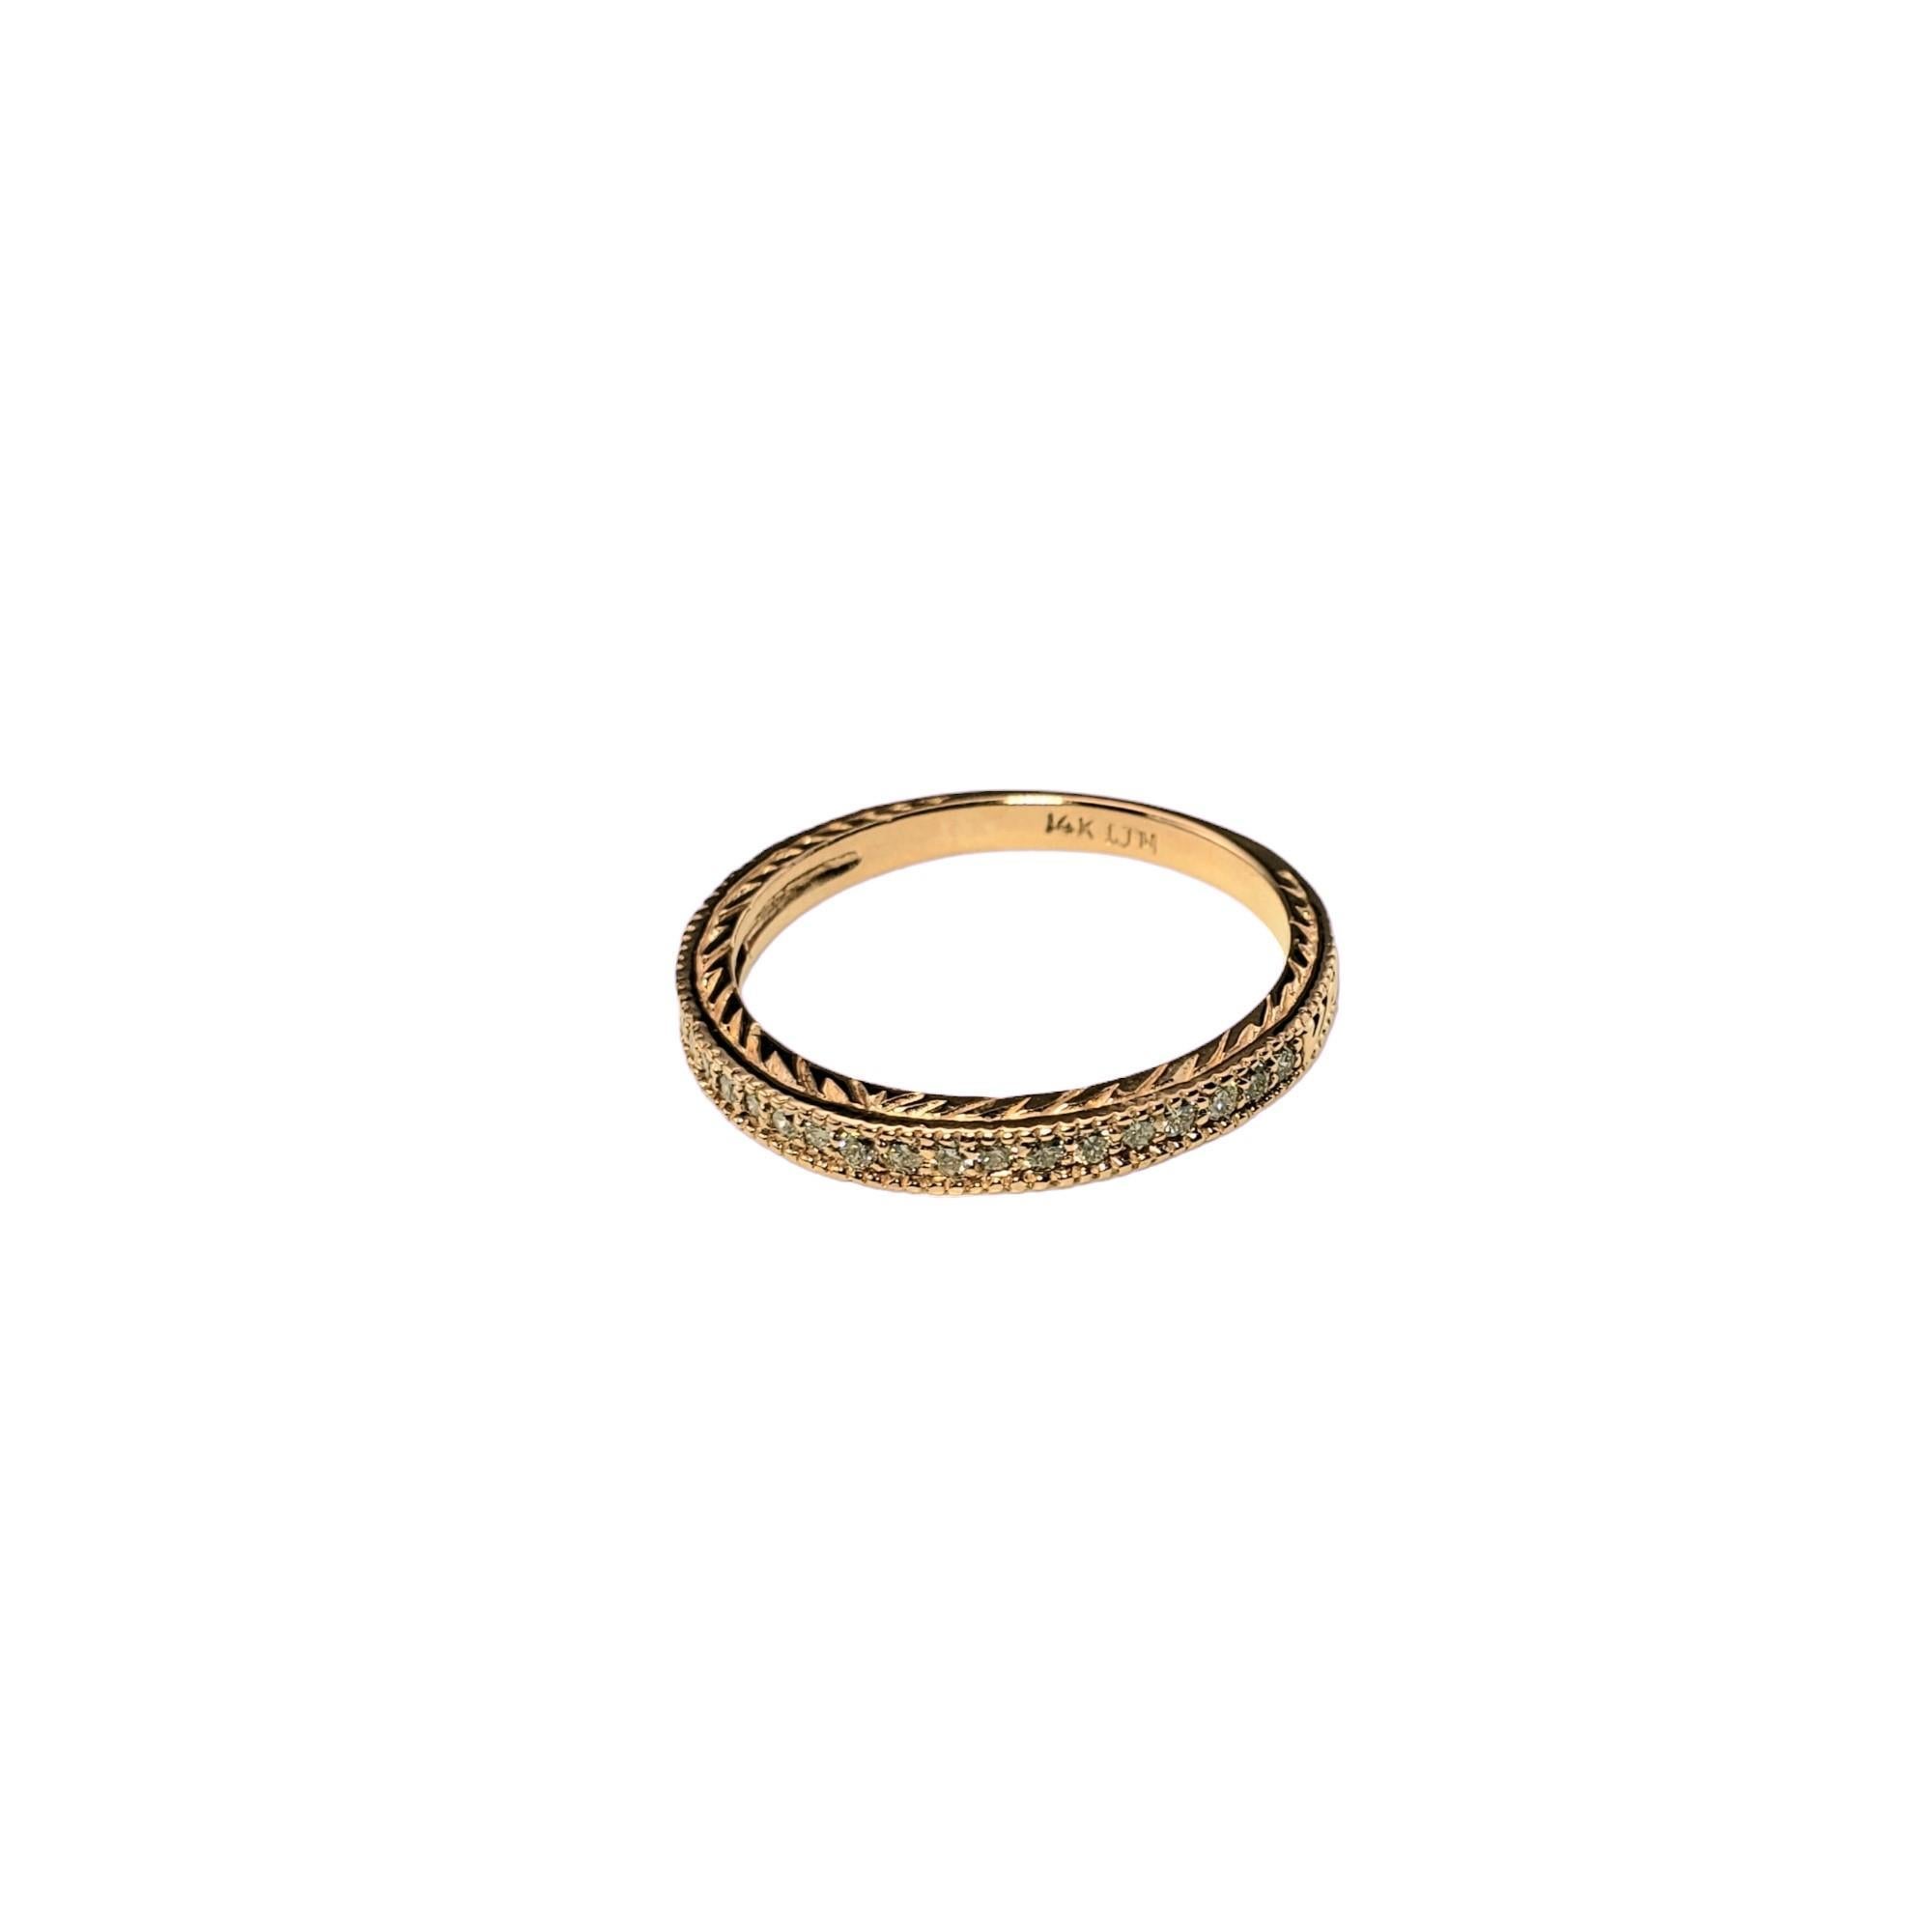 Vintage 14K Rose Gold und Diamant Band Ring Größe 9-

Dieses funkelnde Band ist mit 21 runden Diamanten im Brillantschliff besetzt, die in wunderschönes 14-karätiges Roségold gefasst sind.  Breite: 2 mm.

Ungefähres Gesamtgewicht der Diamanten: 21